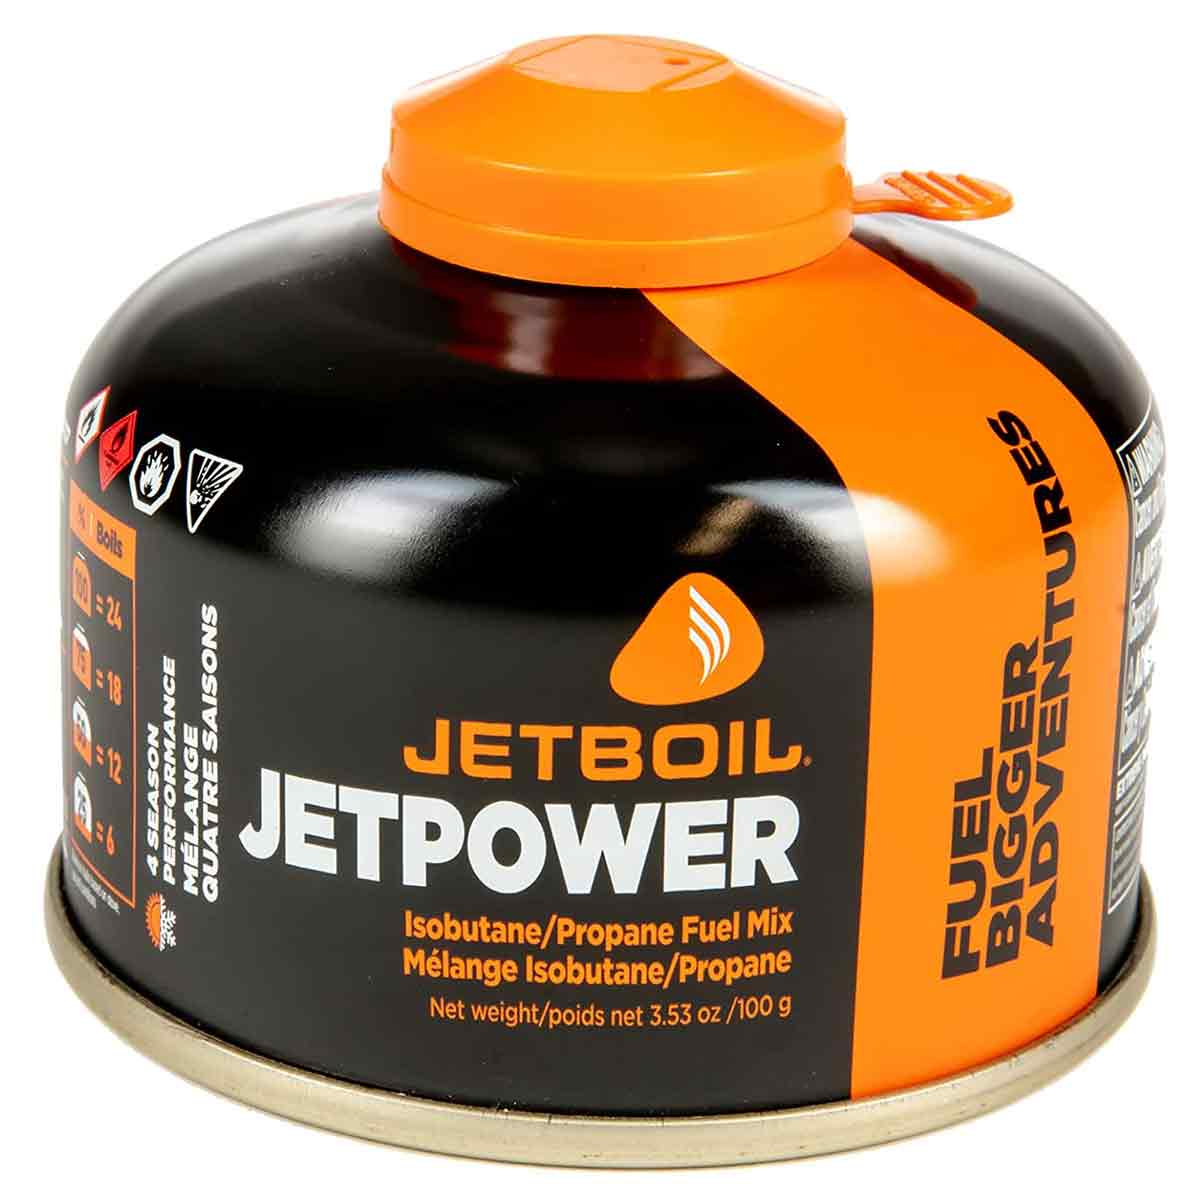 Jetboil Jetpower Gas Fuel Cartridge - John Bull Clothing